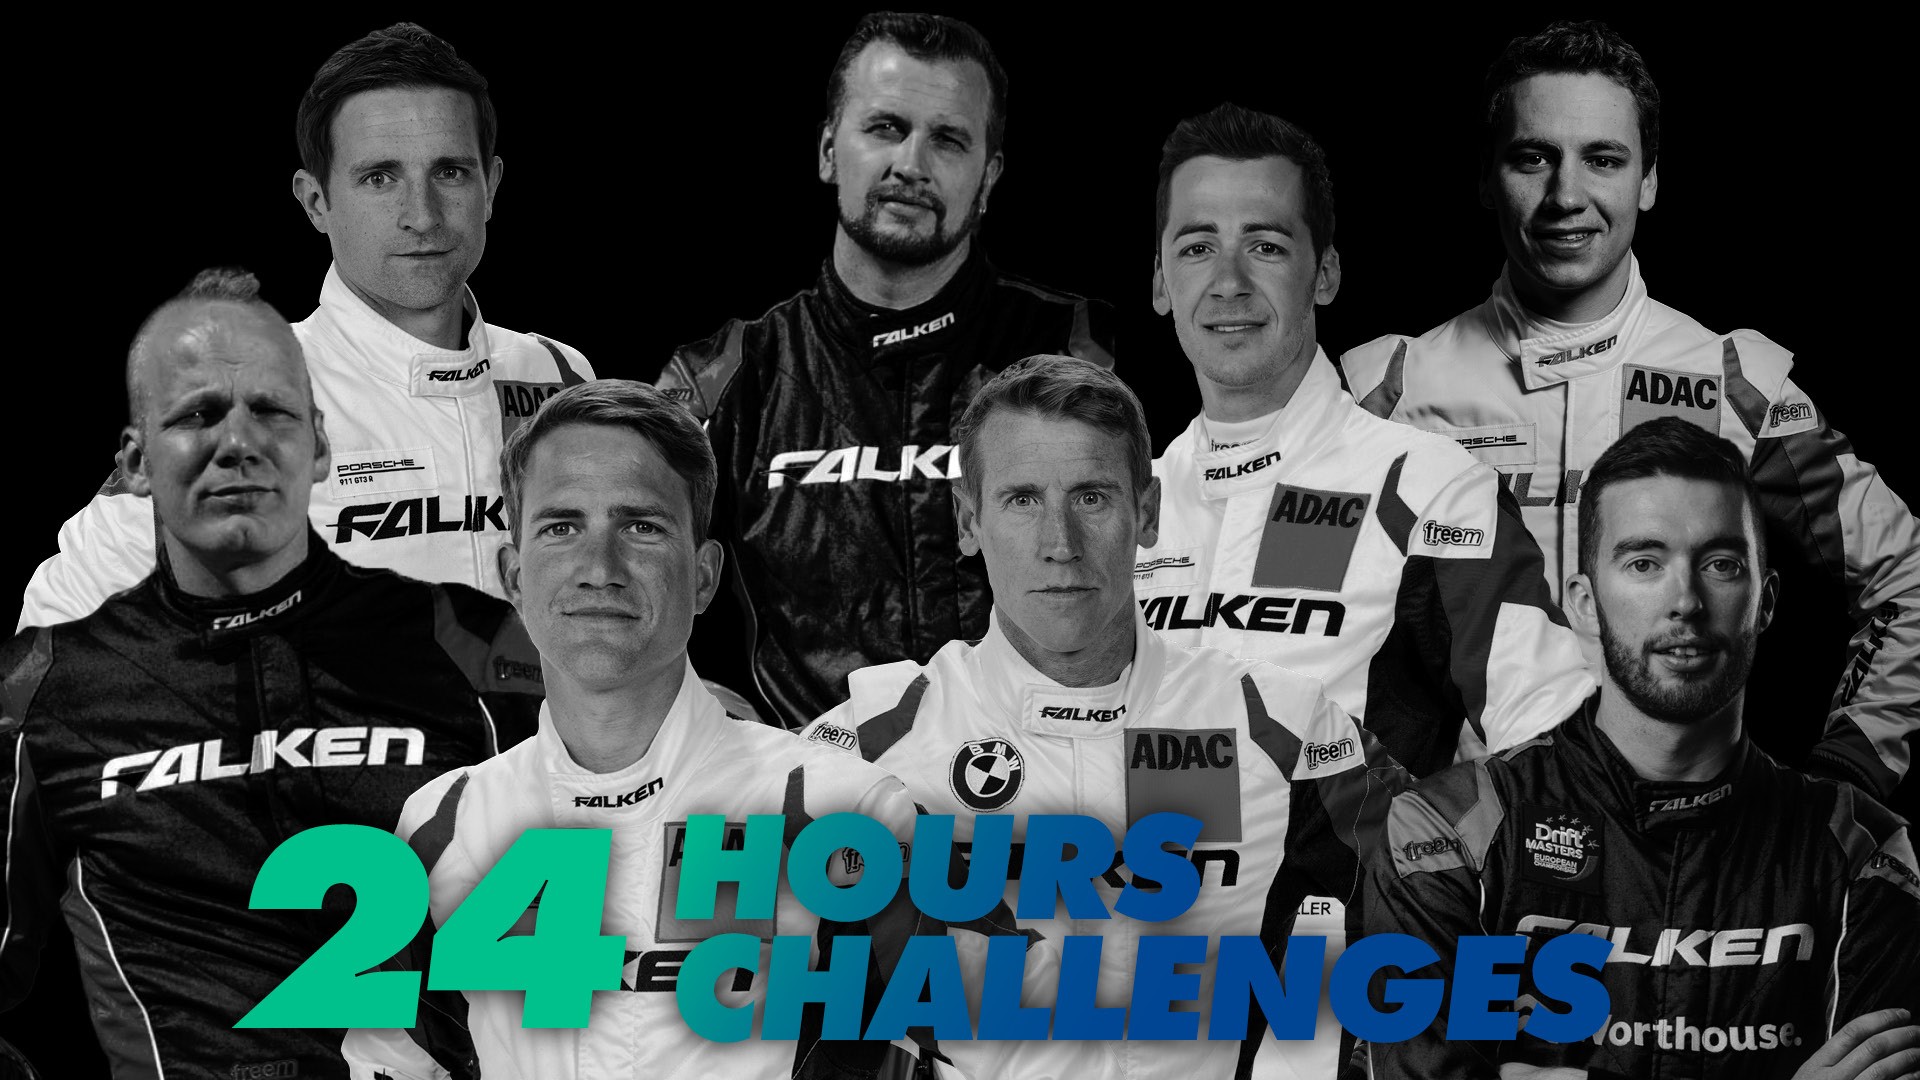 Falken 24 hours challenges